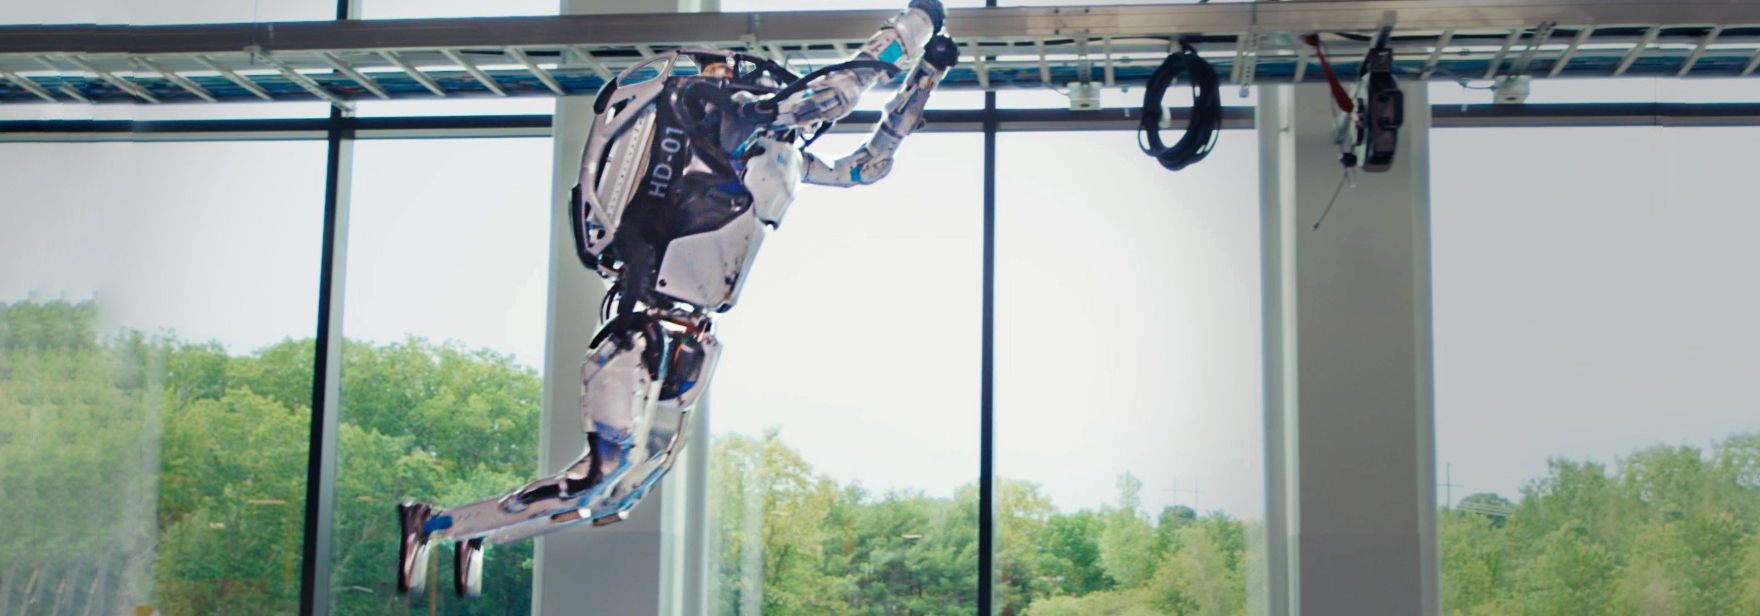 Обложка поста Boston Dynamics научила роботов паркуру. Они одновременно сделали сальто назад — посмотрите сами